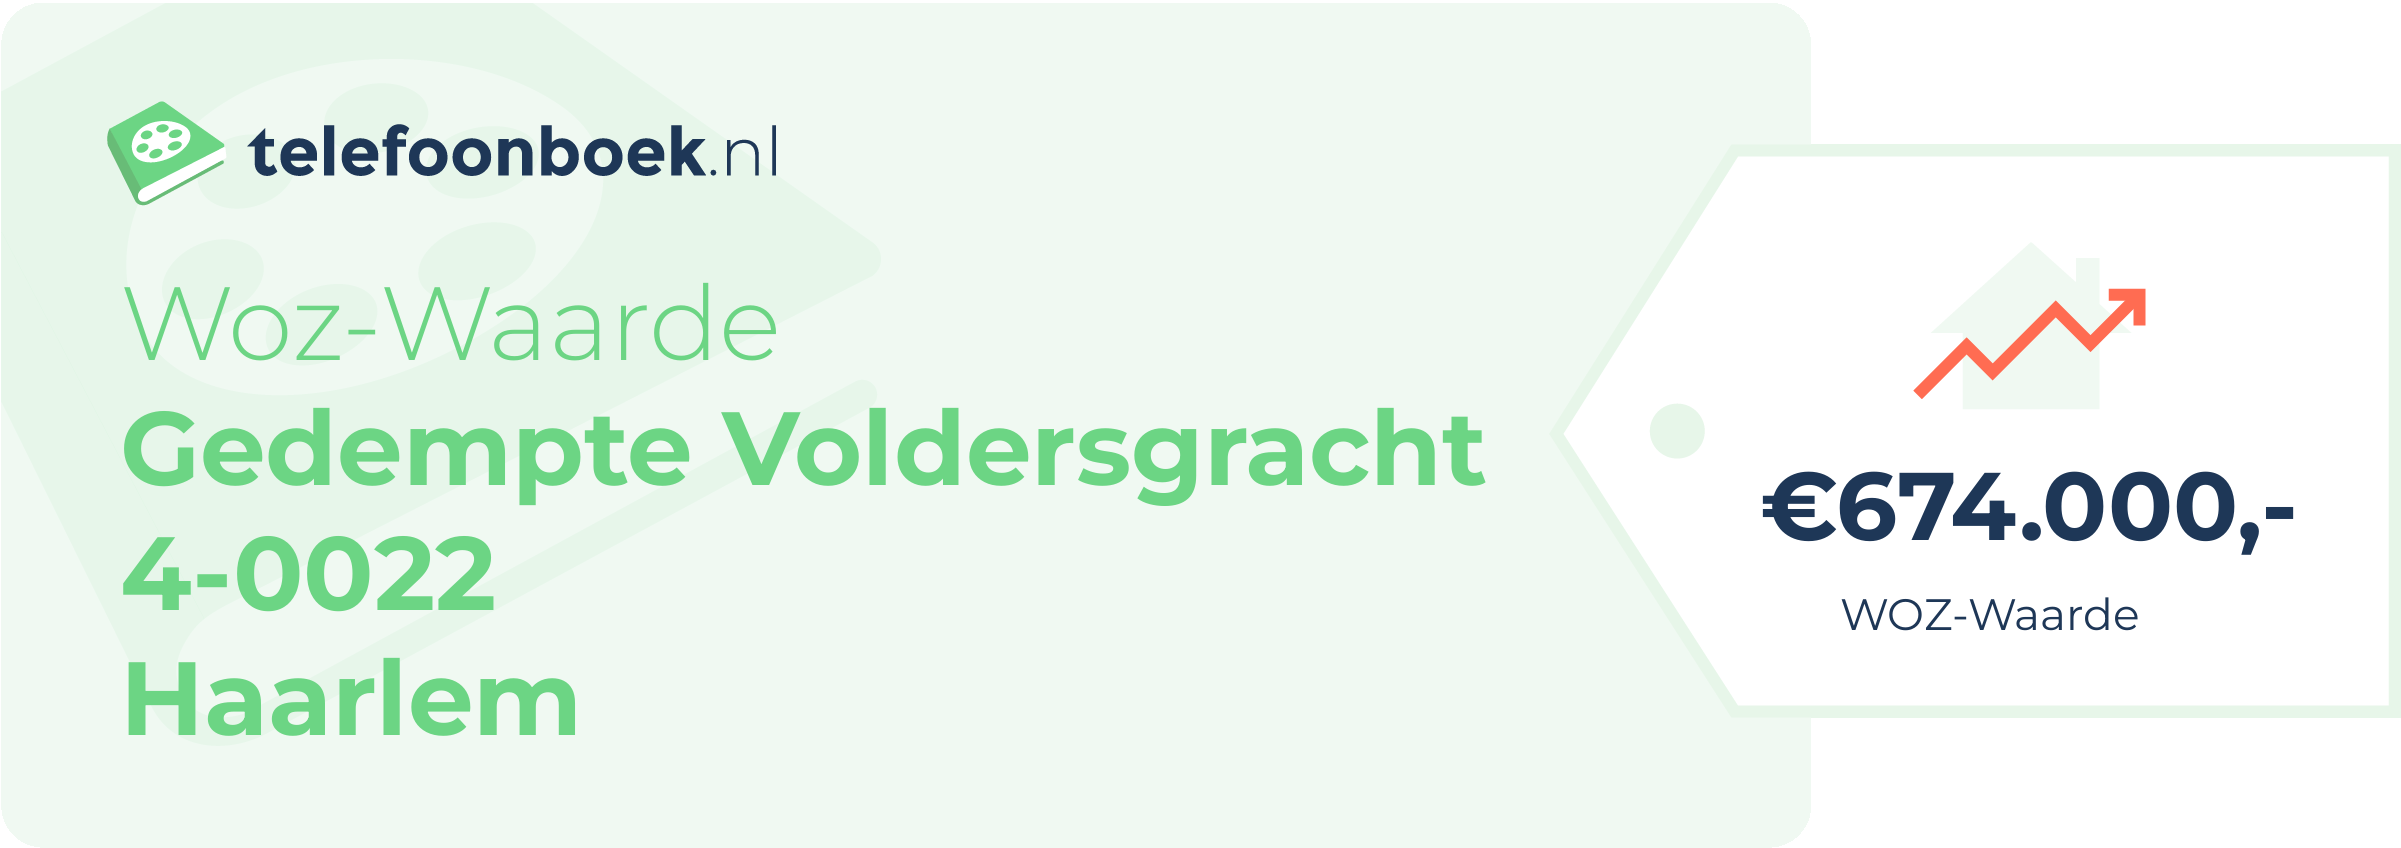 WOZ-waarde Gedempte Voldersgracht 4-0022 Haarlem